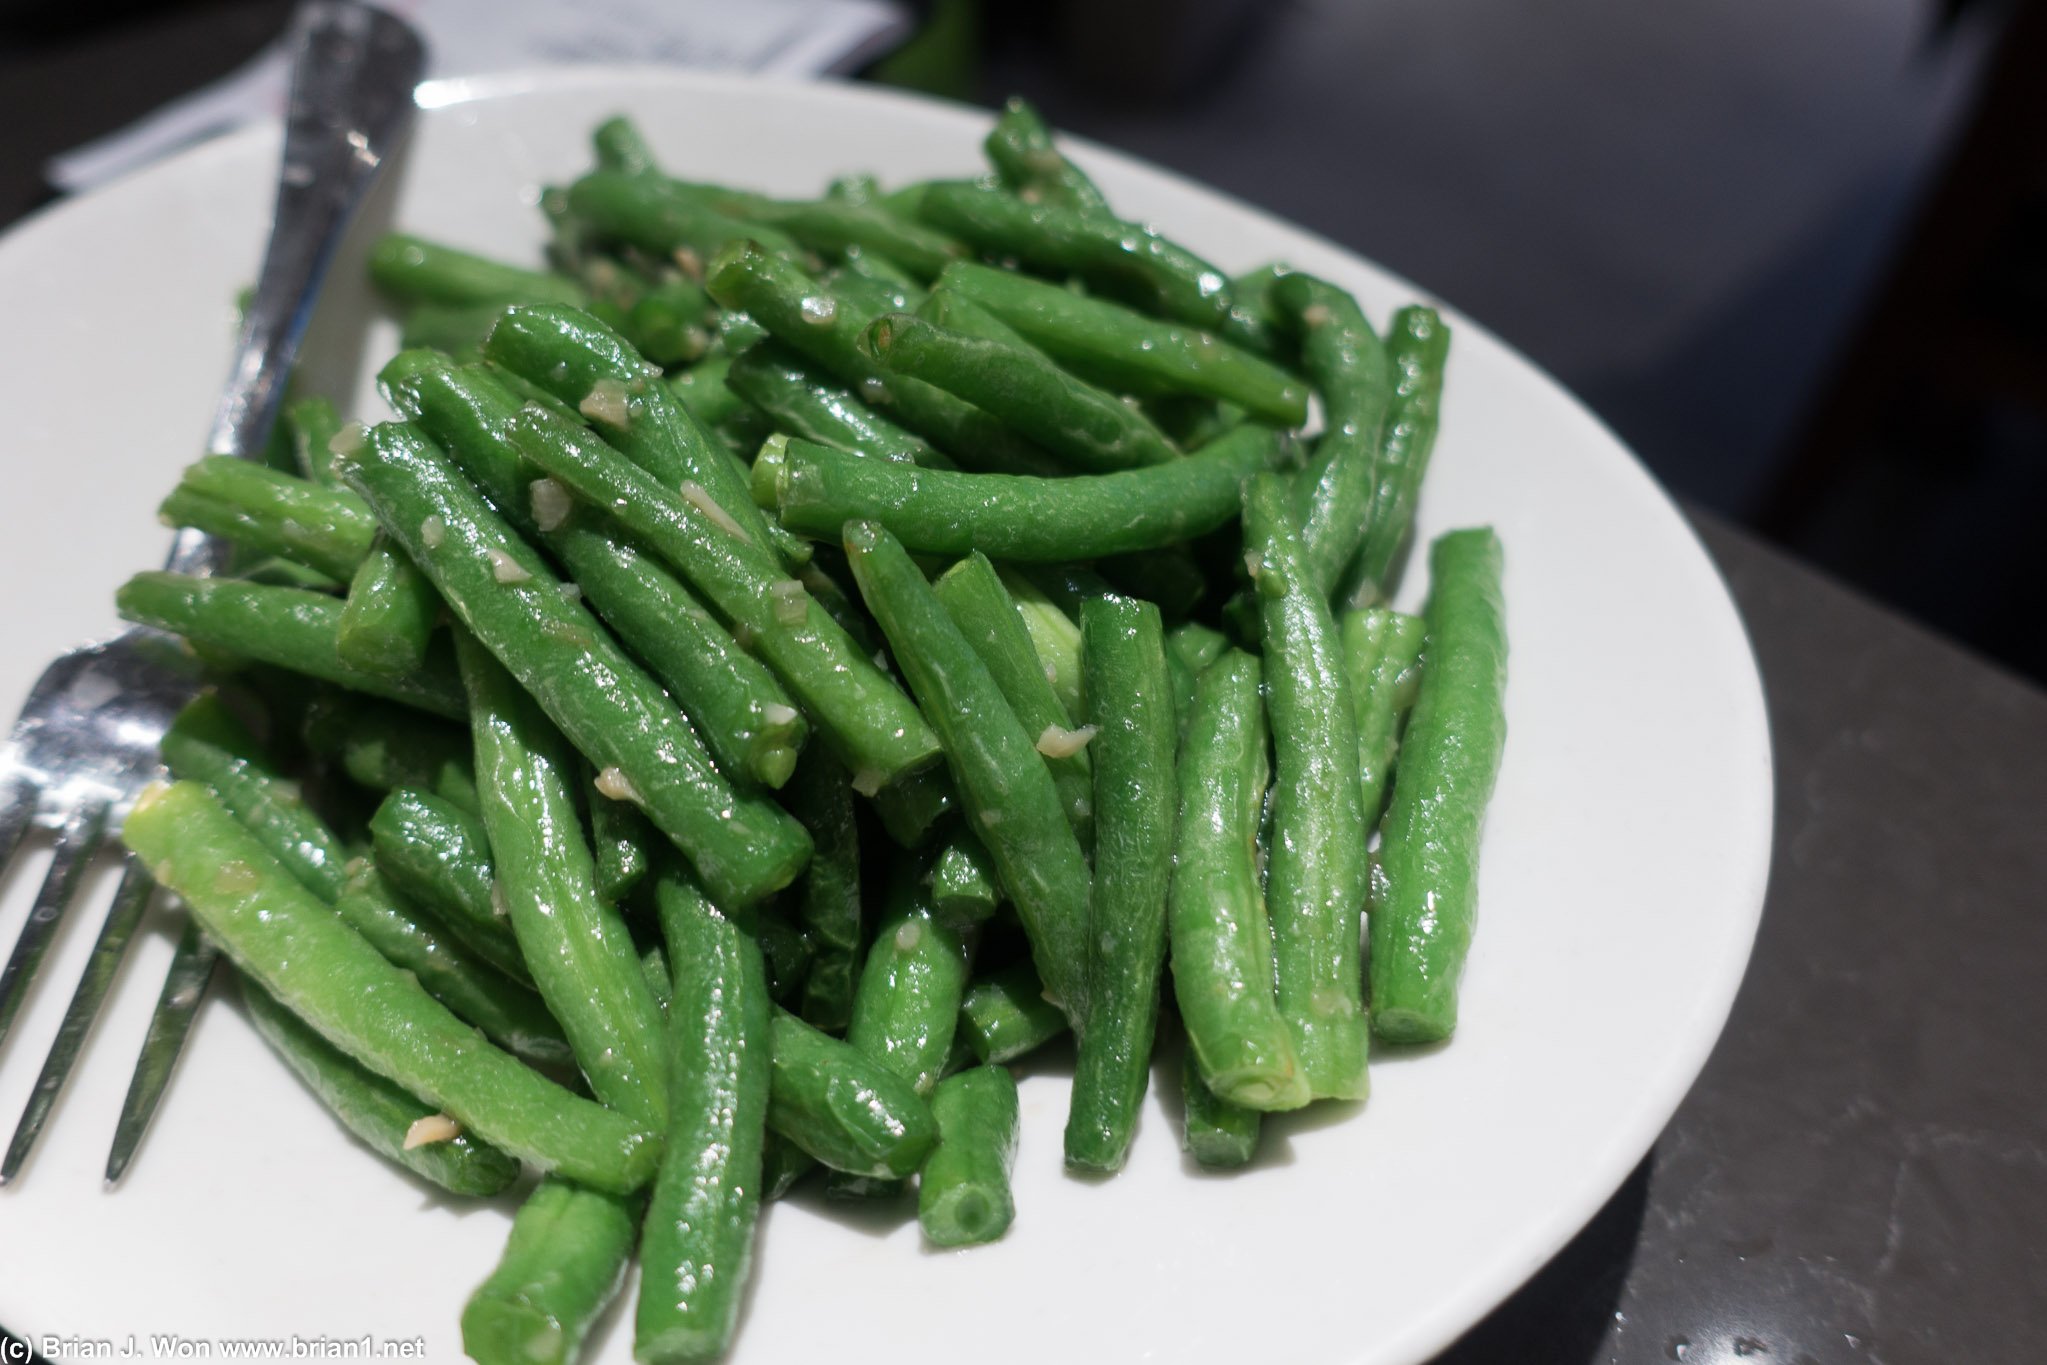 Green beans. Not quite as tasty as the OG ones.